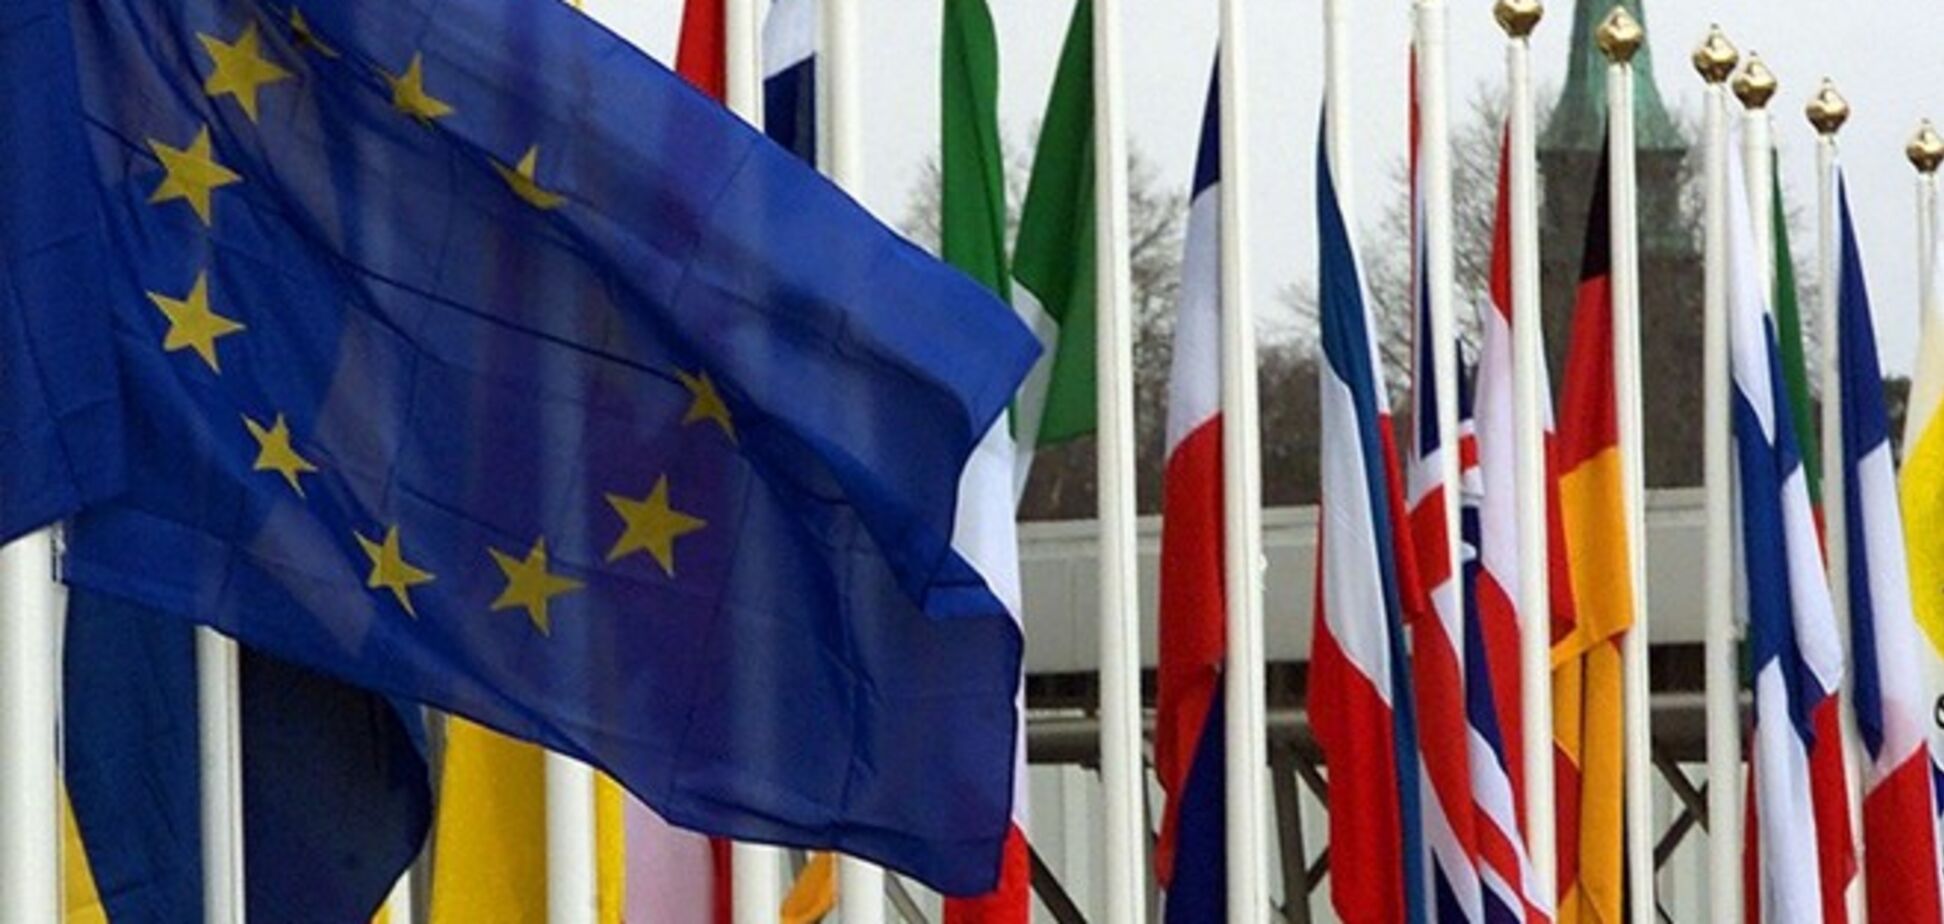 Отношения с РФ и помощь Украине станут главными вопросами саммита ЕС 18-19 декабря